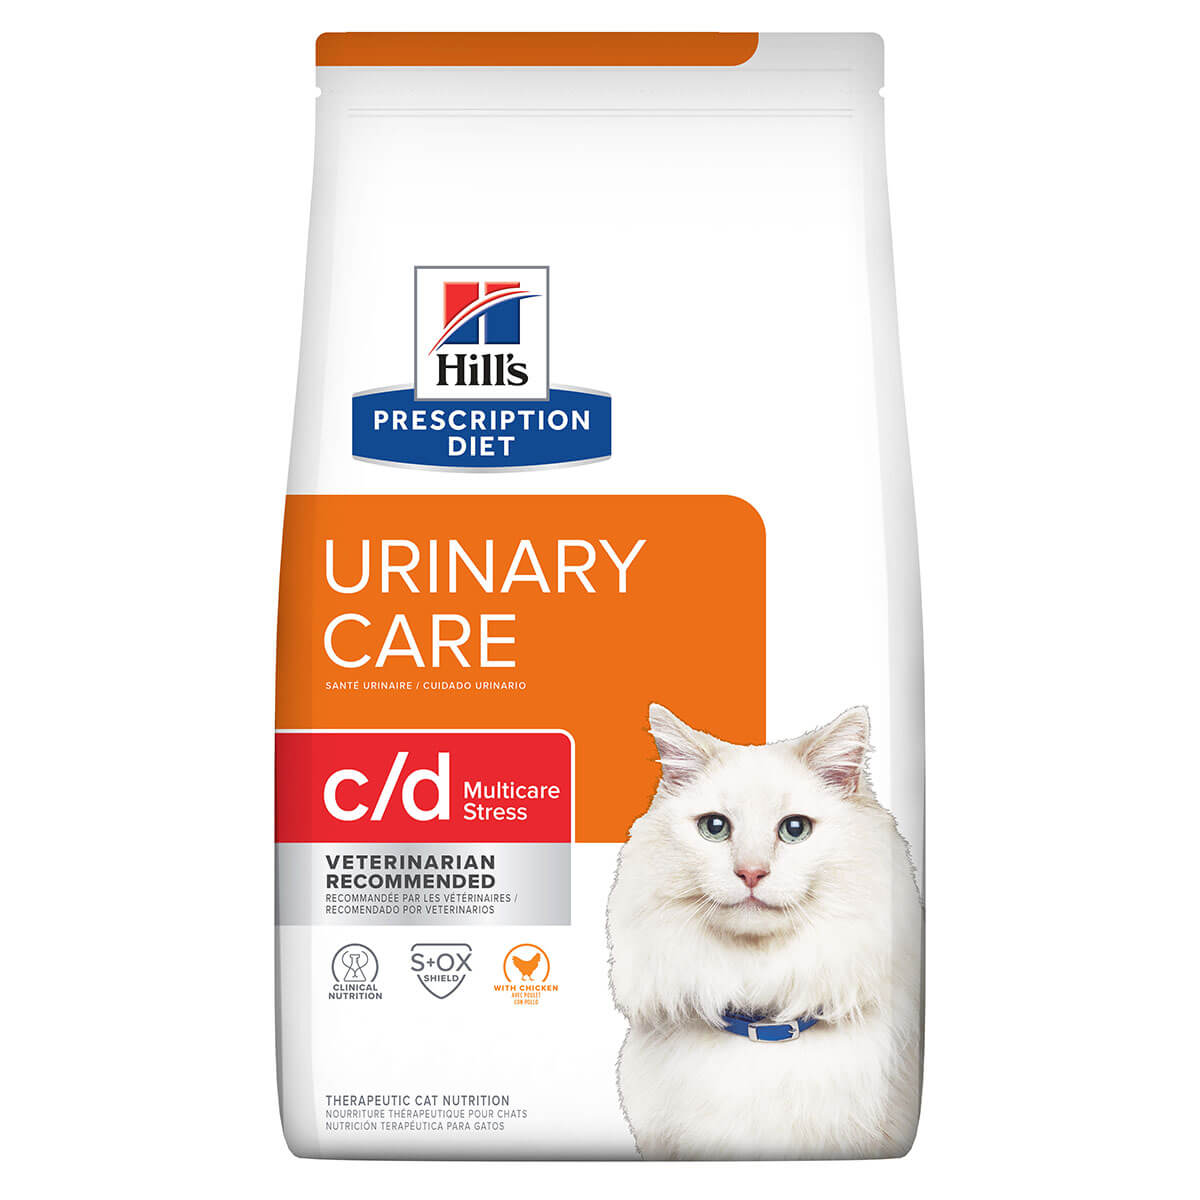 Hill's Prescription Diet C/D Multicare Stress Dry Cat Food